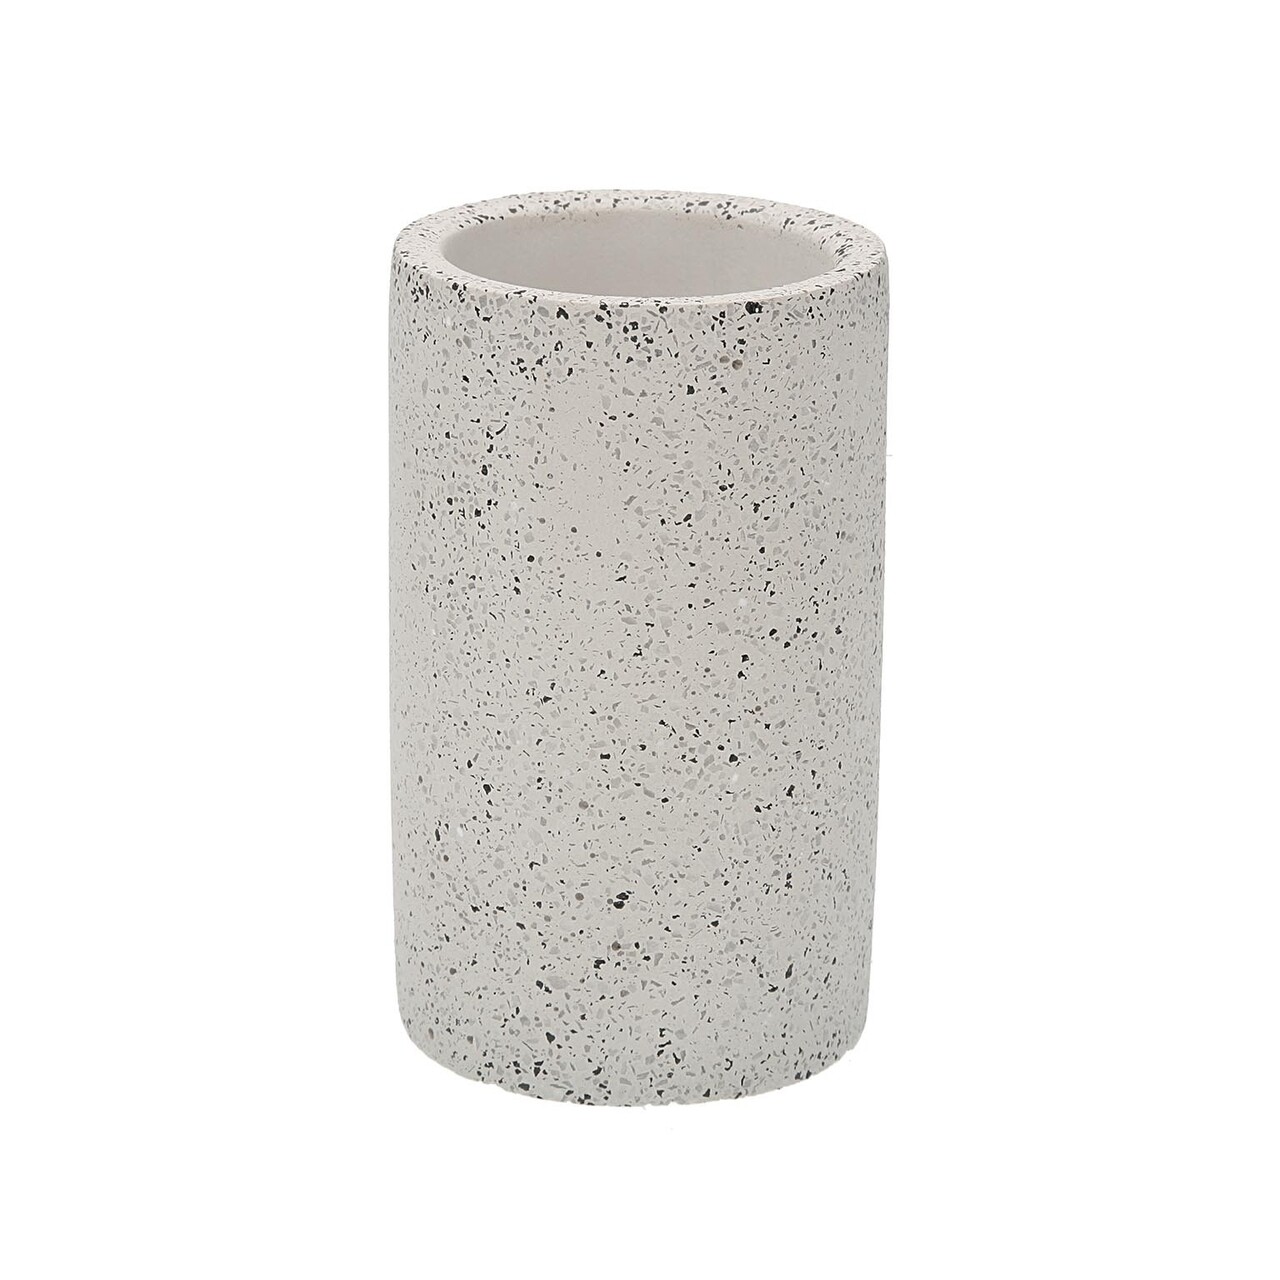 Kefetartó és fogkrém Stone, Versa, Ø7x12,5 cm, polirazin, fehér